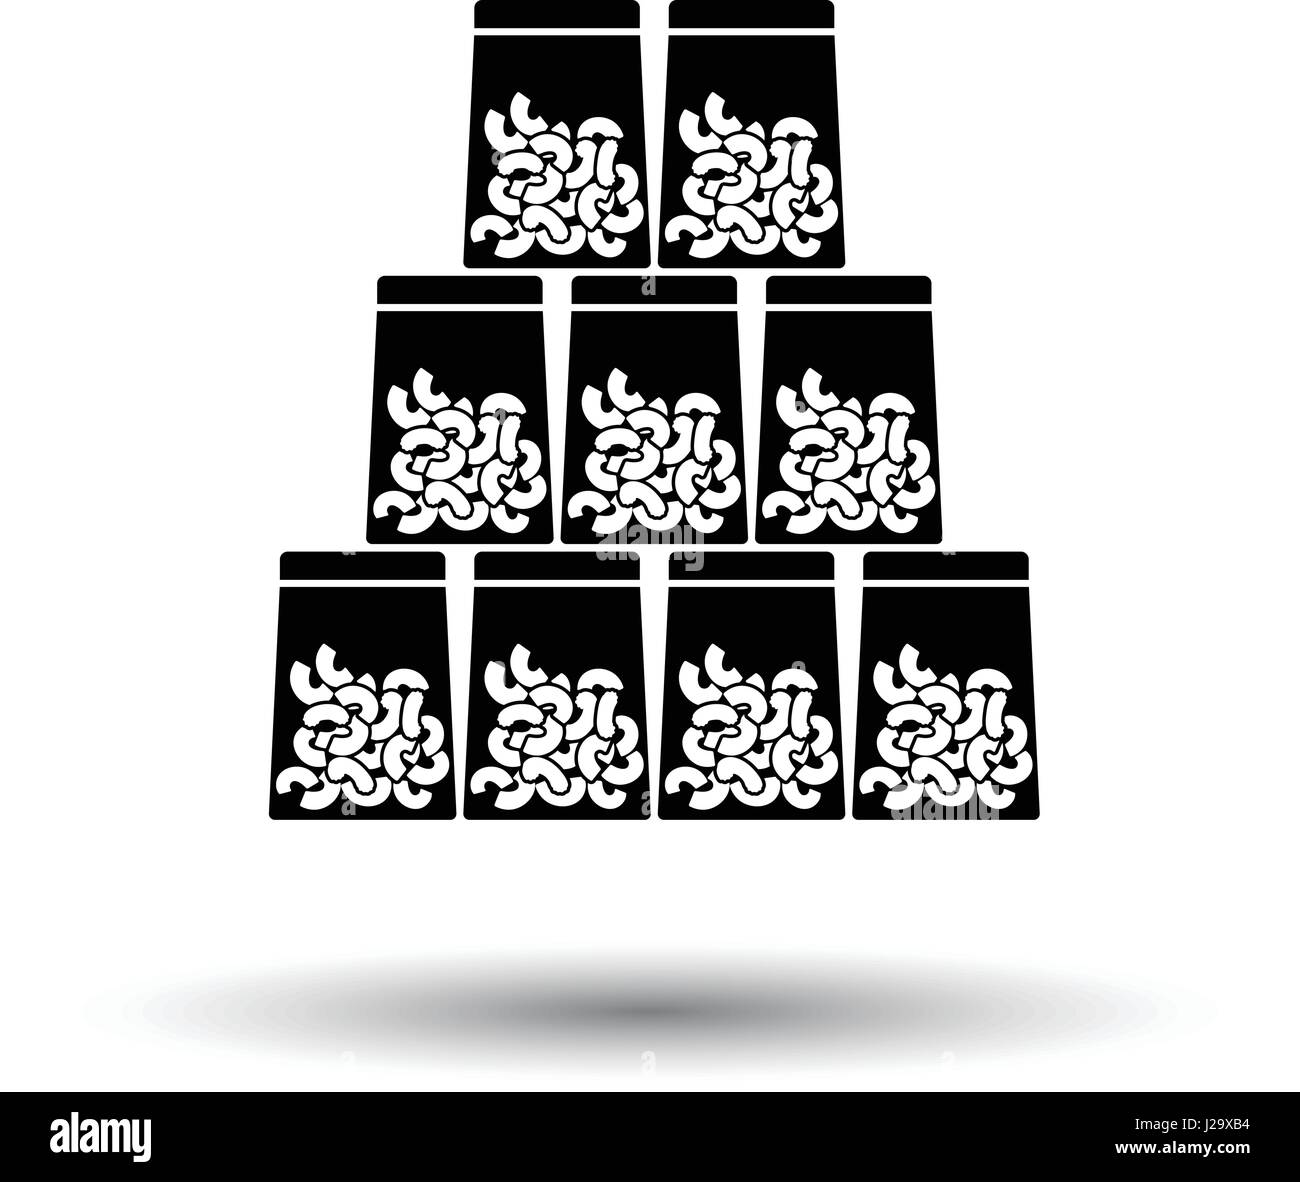 Makkaroni in Pakete-Symbol. Schwarzer Hintergrund mit weißen. Vektor-Illustration. Stock Vektor